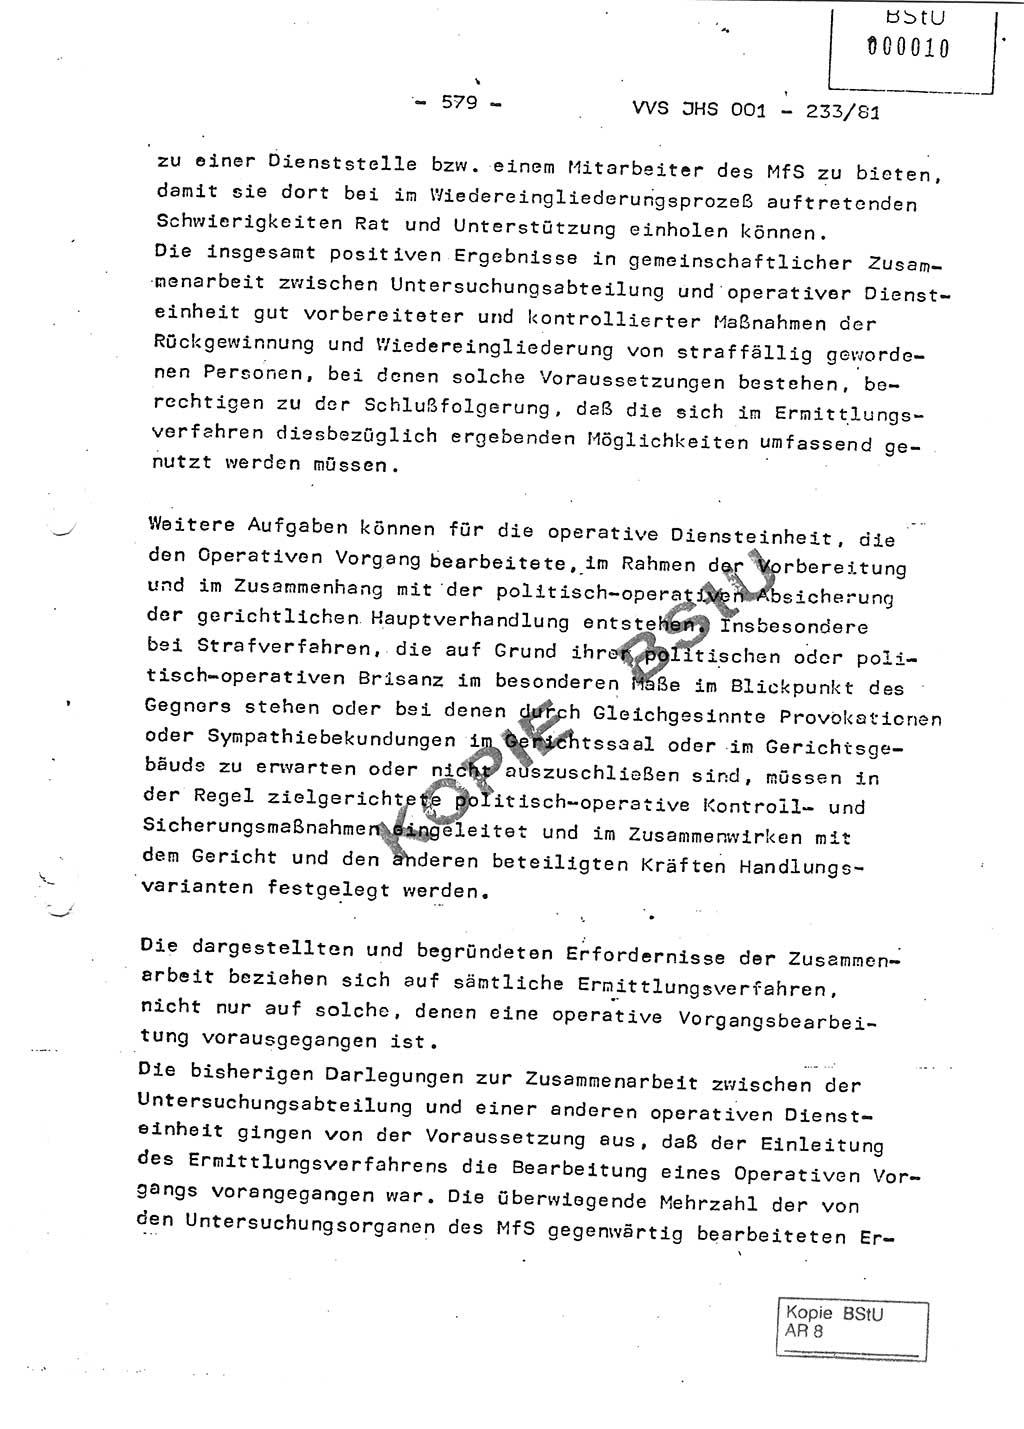 Dissertation Oberstleutnant Horst Zank (JHS), Oberstleutnant Dr. Karl-Heinz Knoblauch (JHS), Oberstleutnant Gustav-Adolf Kowalewski (HA Ⅸ), Oberstleutnant Wolfgang Plötner (HA Ⅸ), Ministerium für Staatssicherheit (MfS) [Deutsche Demokratische Republik (DDR)], Juristische Hochschule (JHS), Vertrauliche Verschlußsache (VVS) o001-233/81, Potsdam 1981, Blatt 579 (Diss. MfS DDR JHS VVS o001-233/81 1981, Bl. 579)